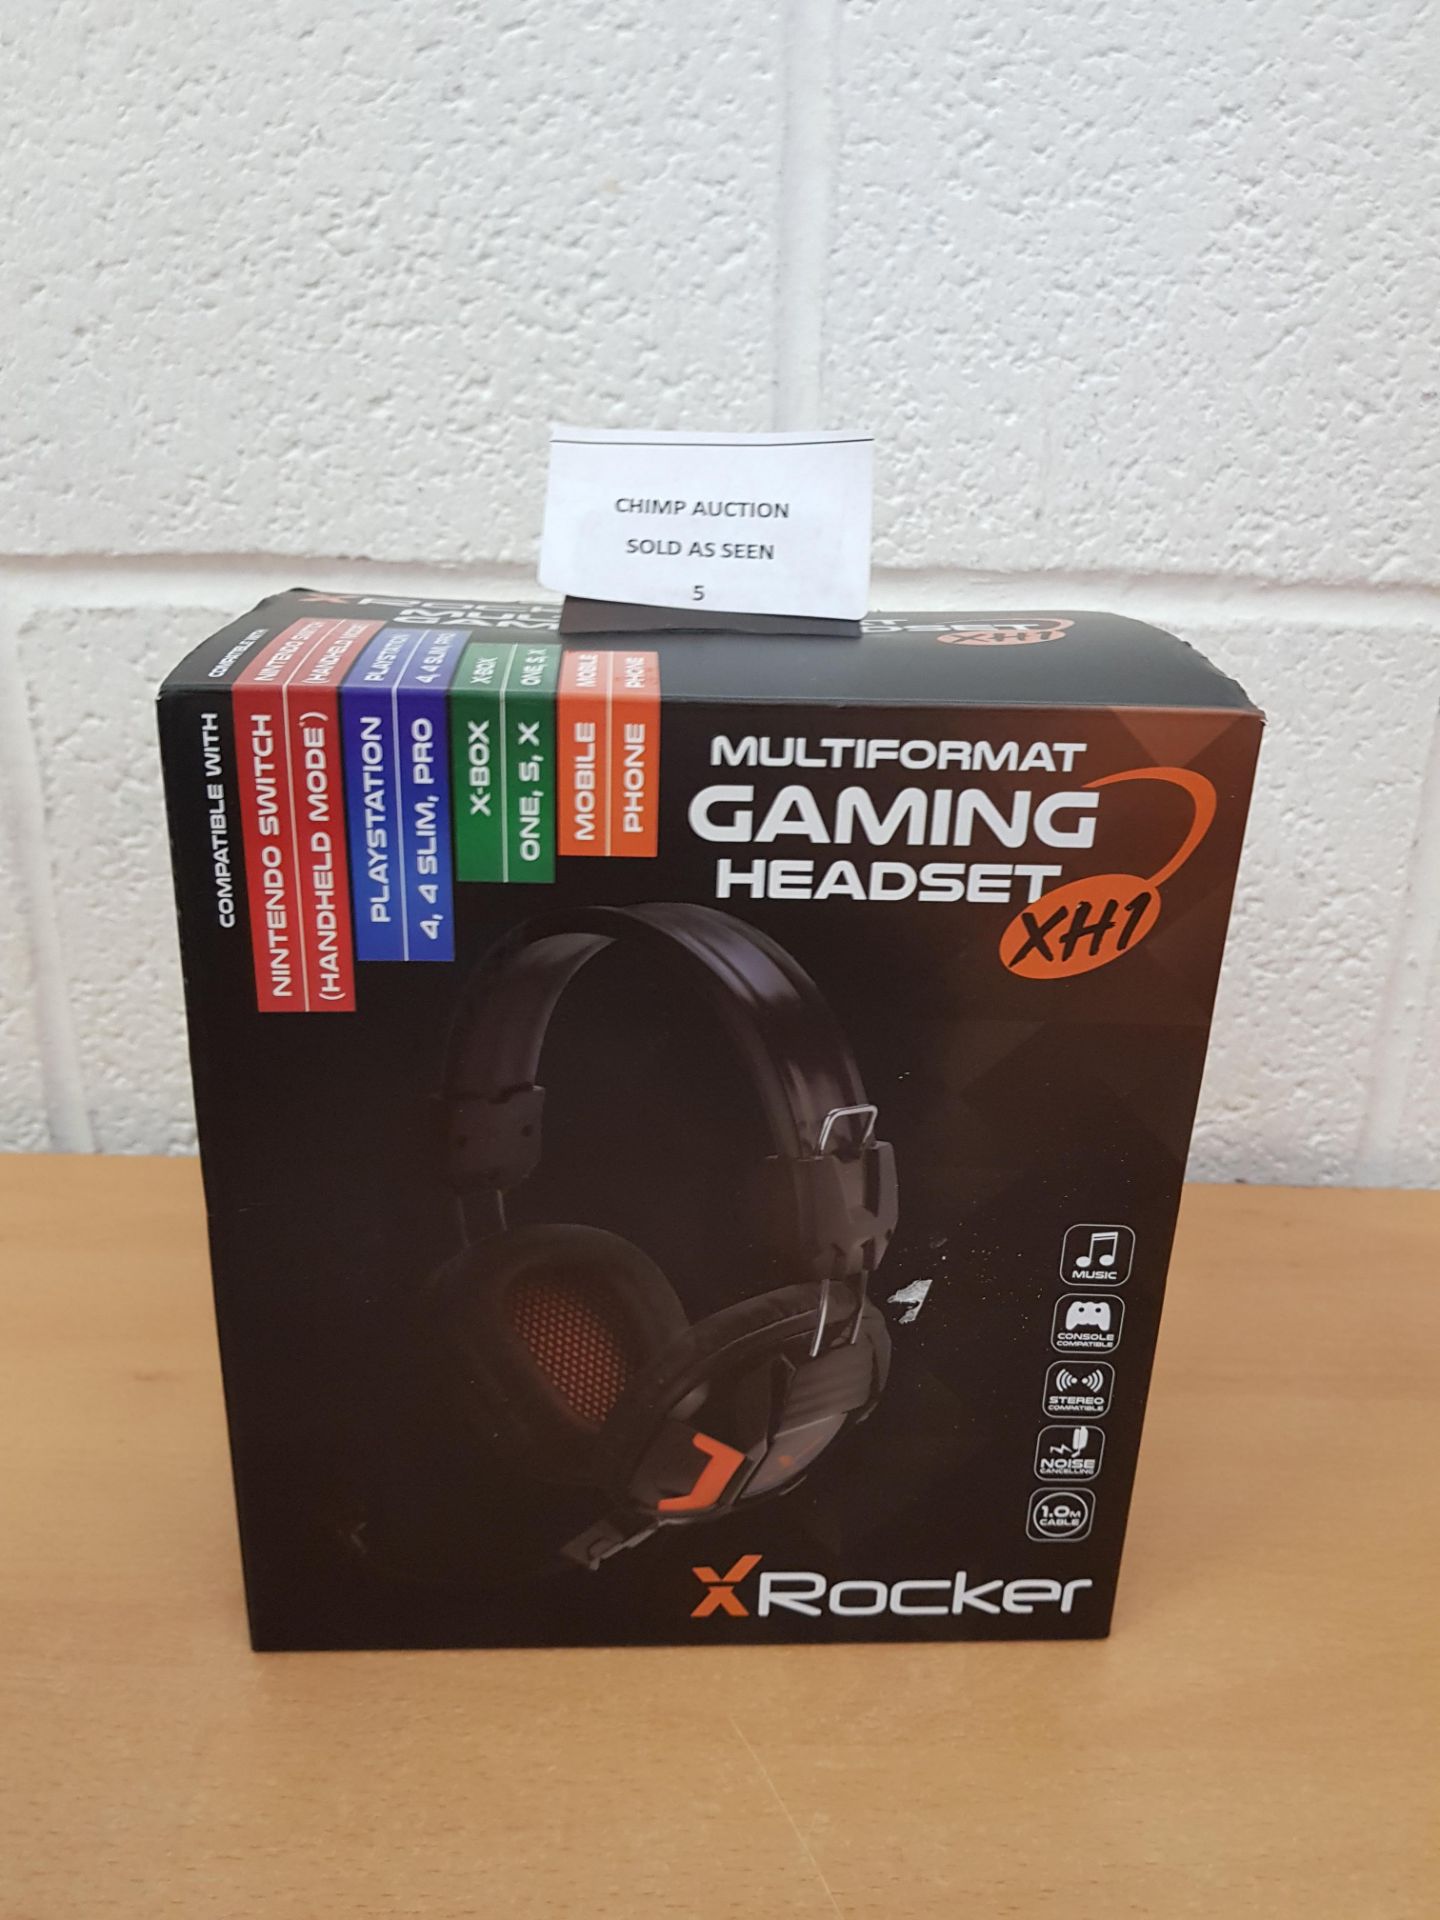 Xrocker XH1 Multiformat Gaming Headset